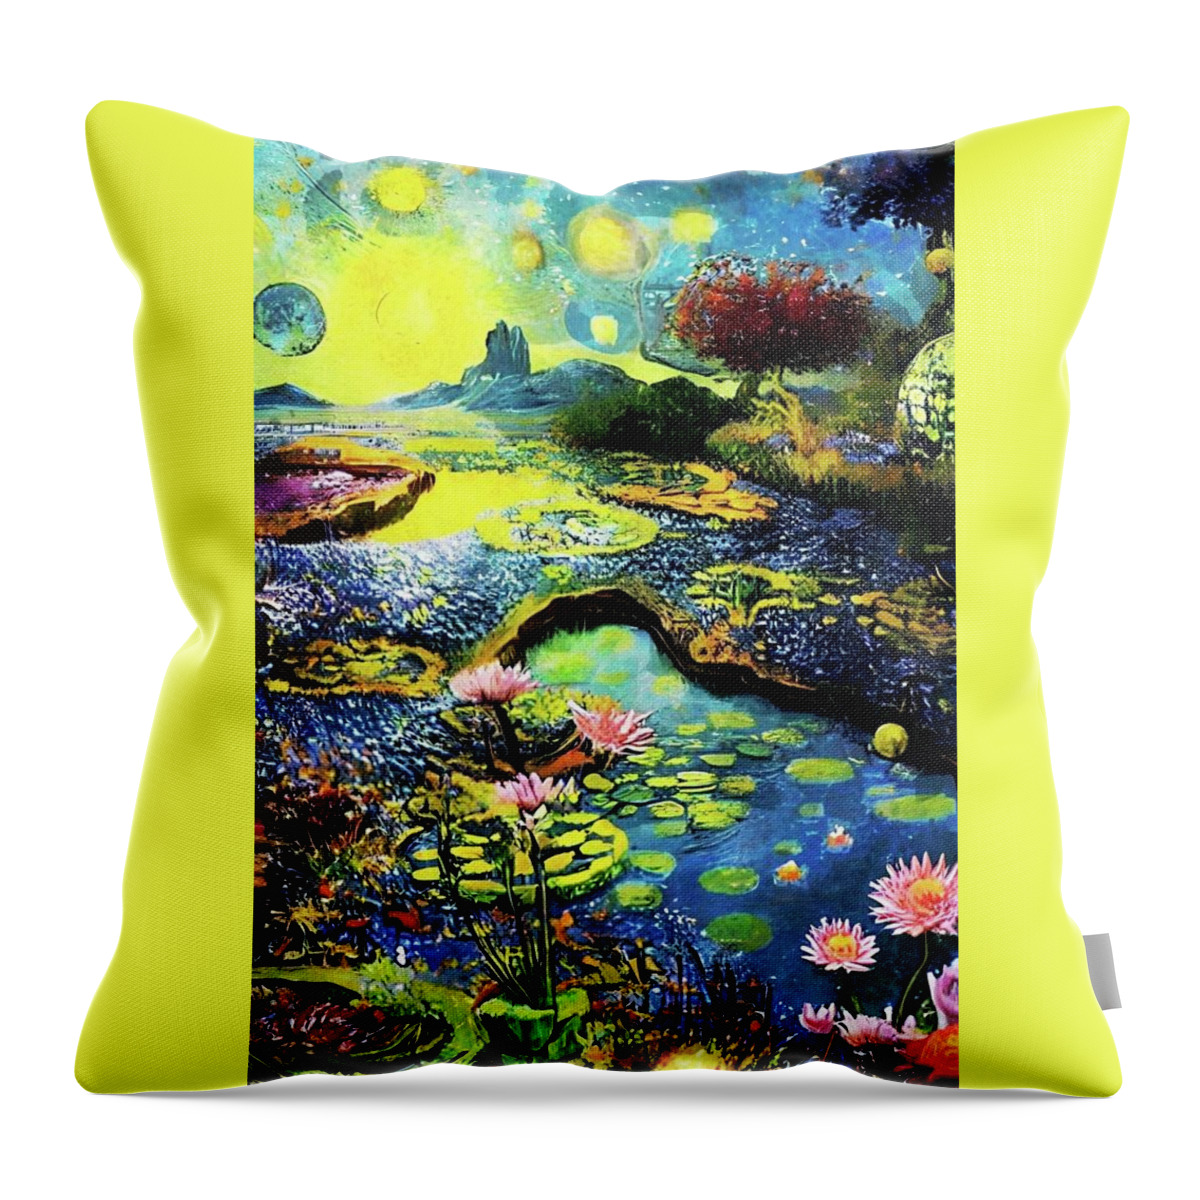 Garden Throw Pillow featuring the digital art Fantasy Garden by Ally White